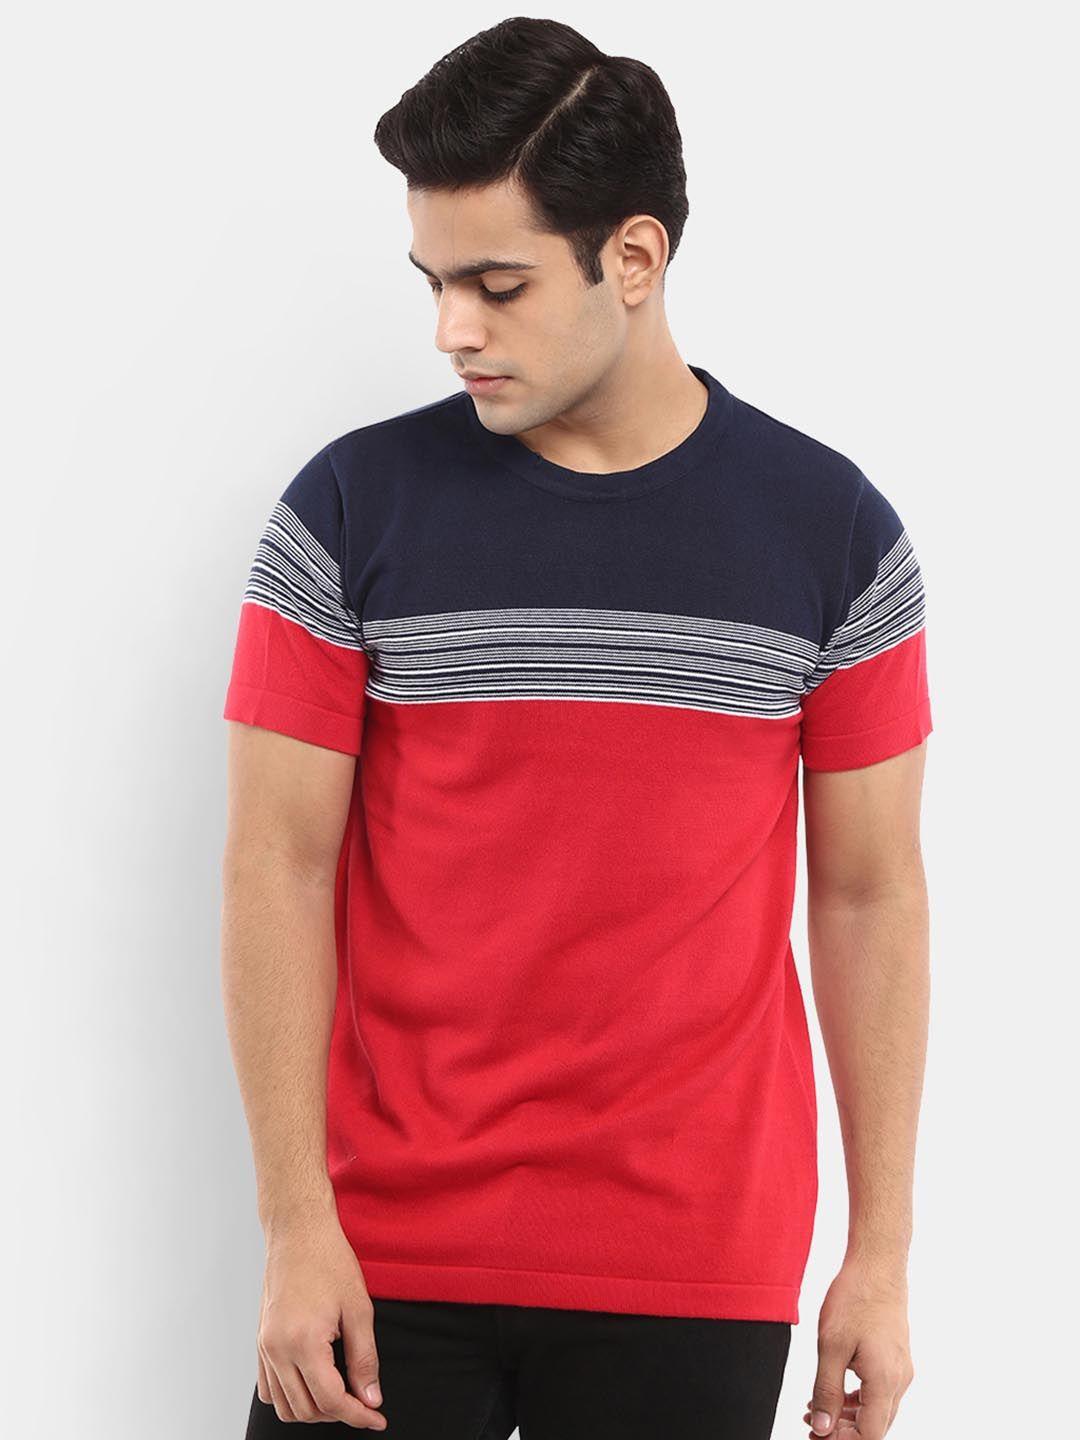 v-mart men red & navy blue colourblocked slim fit t-shirt